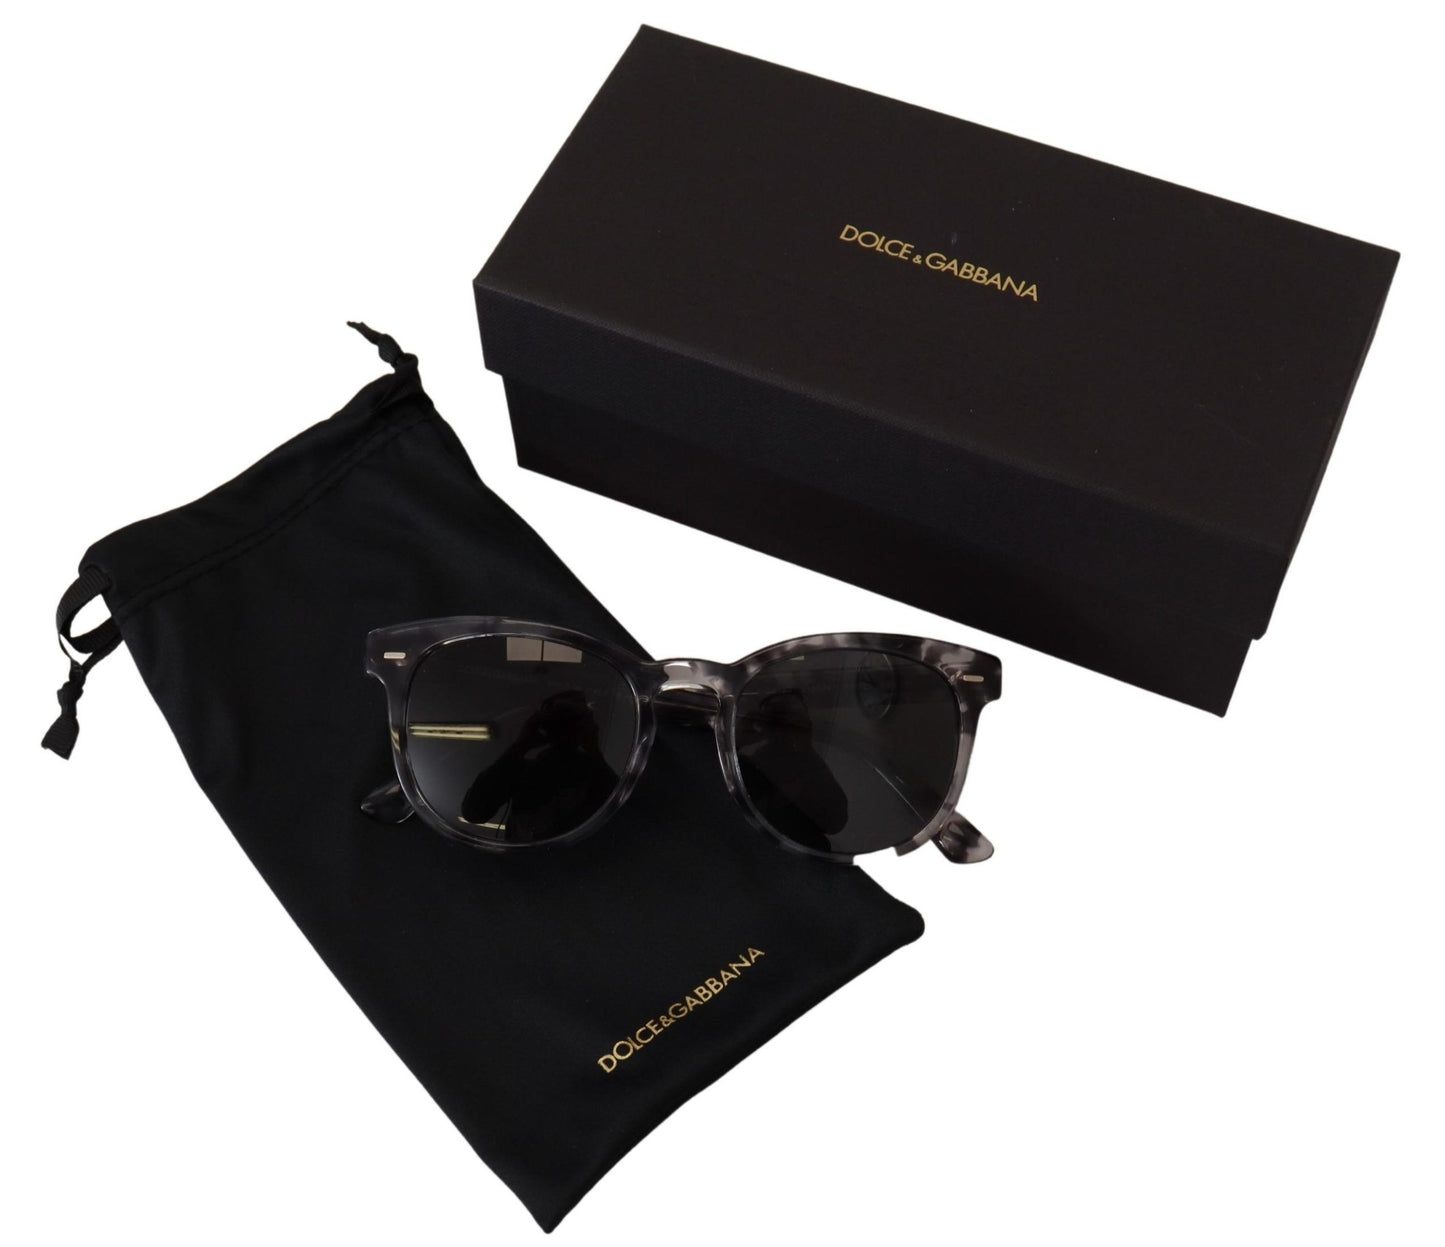 Dolce & Gabbana Black Havanna Frame Square Lens DG4254F Sonnenbrille